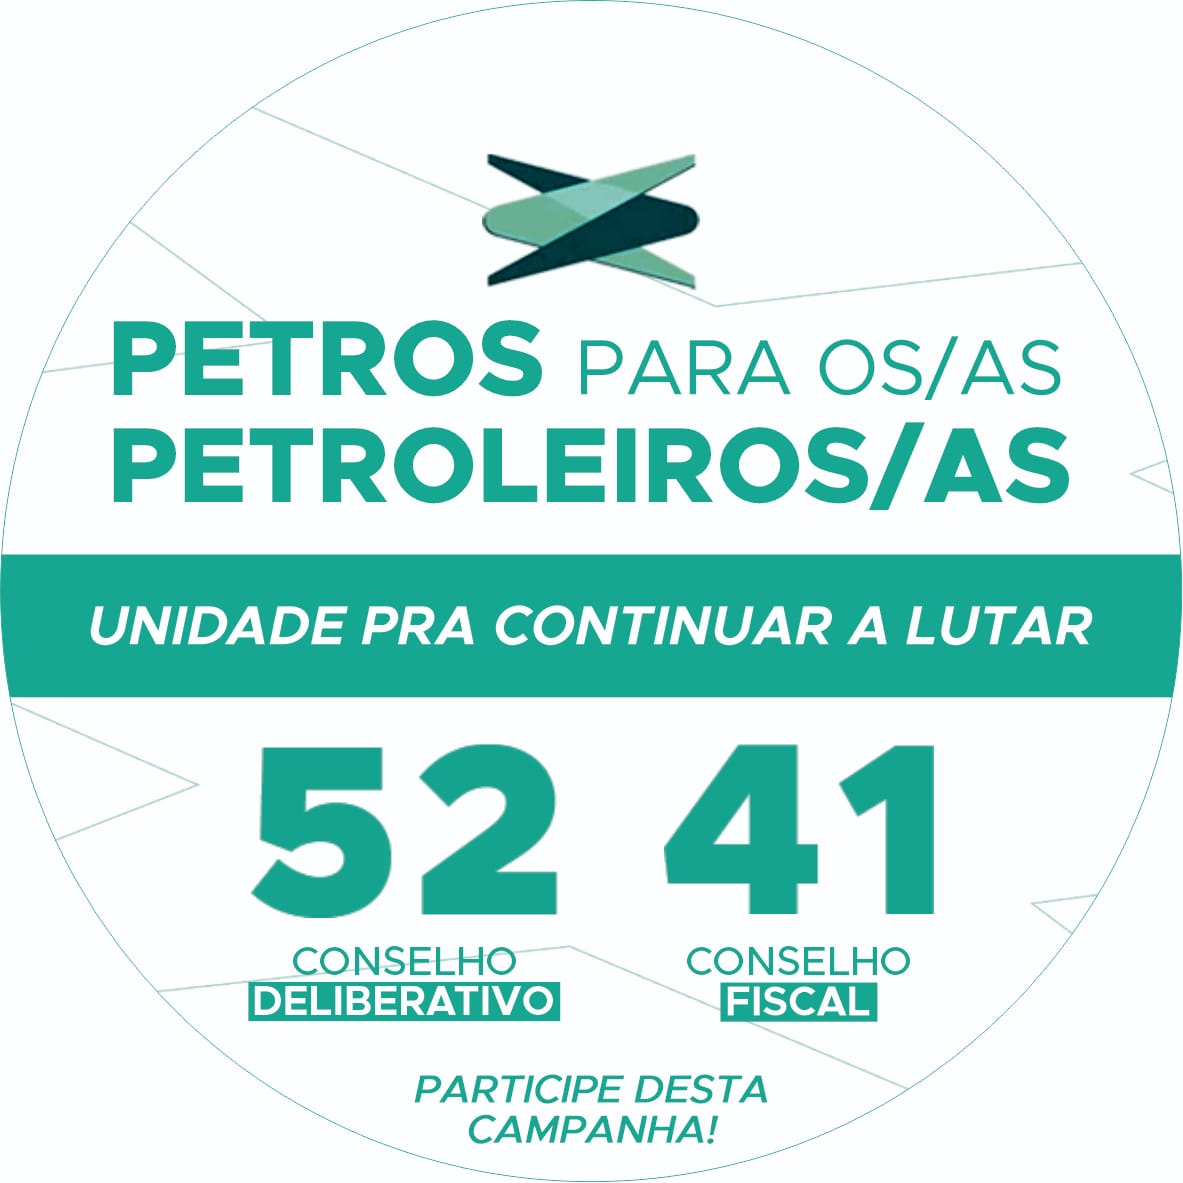 Confira sete propostas da Chapa Petros para os/as petroleiros/as - Unidade para continuar a lutar